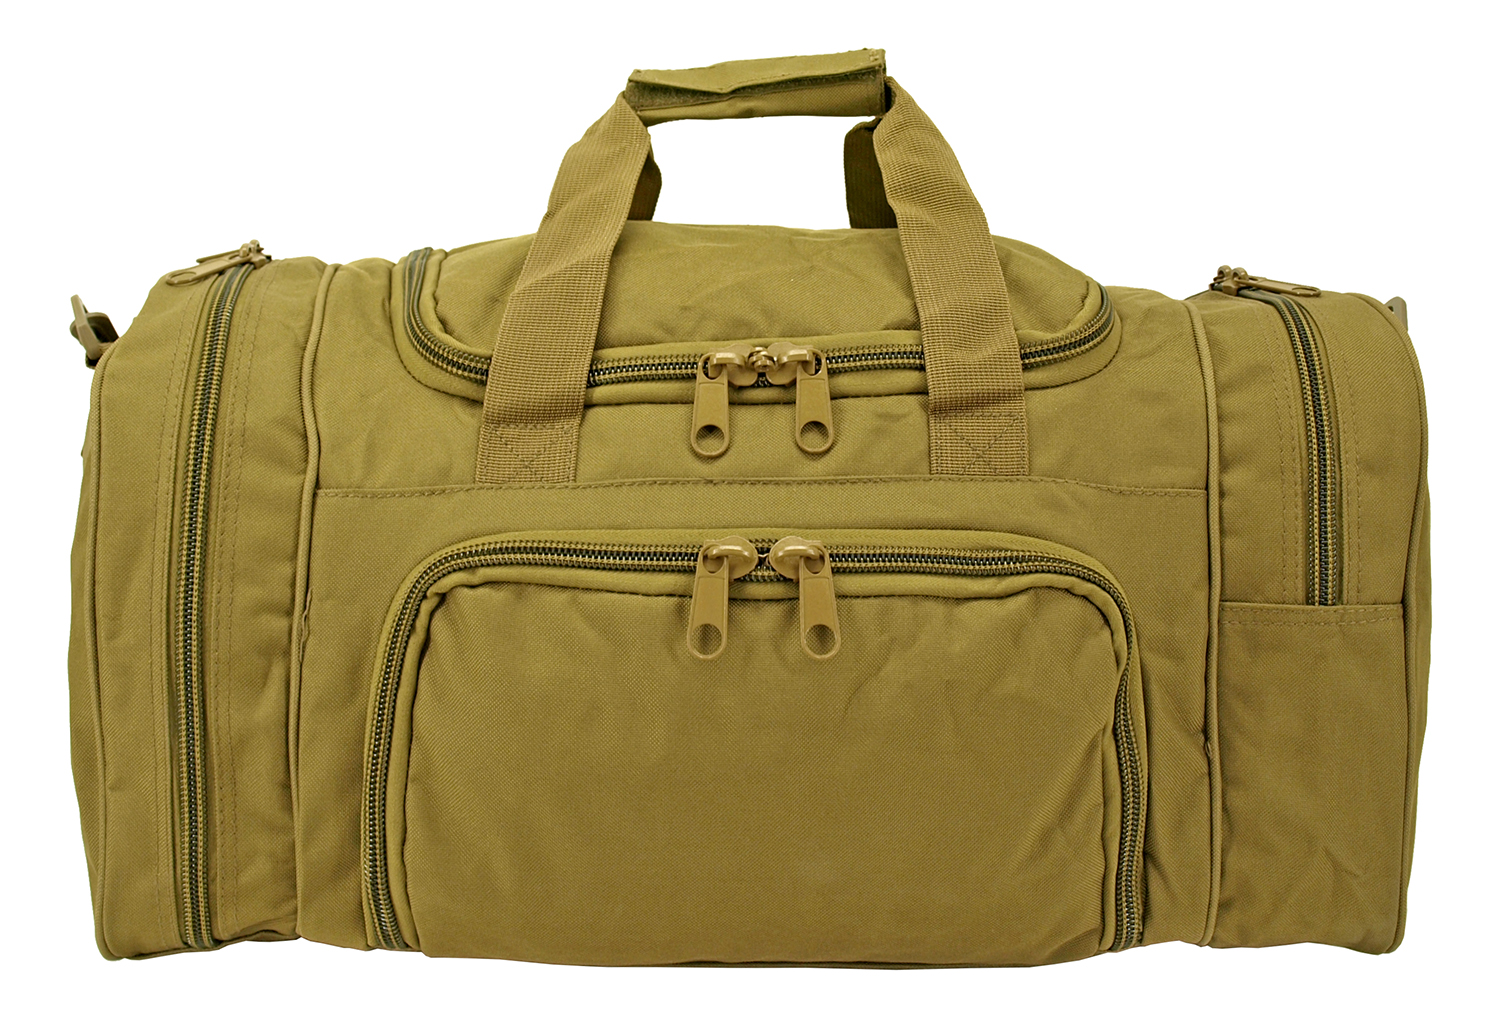 Tactical Duffle Bag - Desert Tan